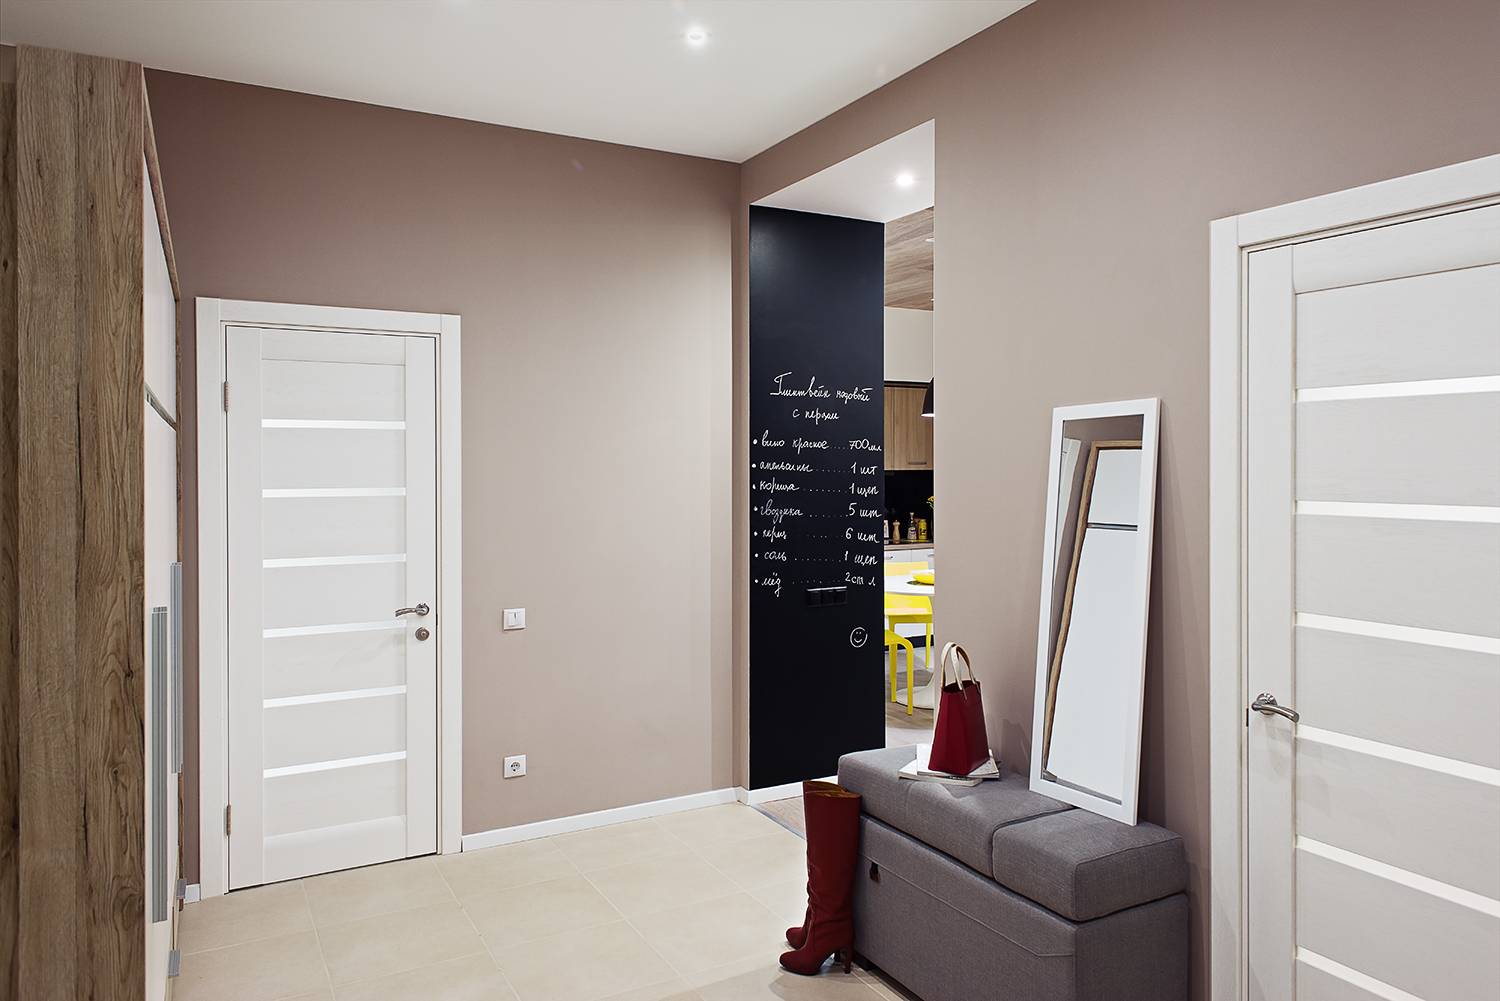 Серый ламинат в интерьере квартиры - фото: в сочетании с дверями и обоями